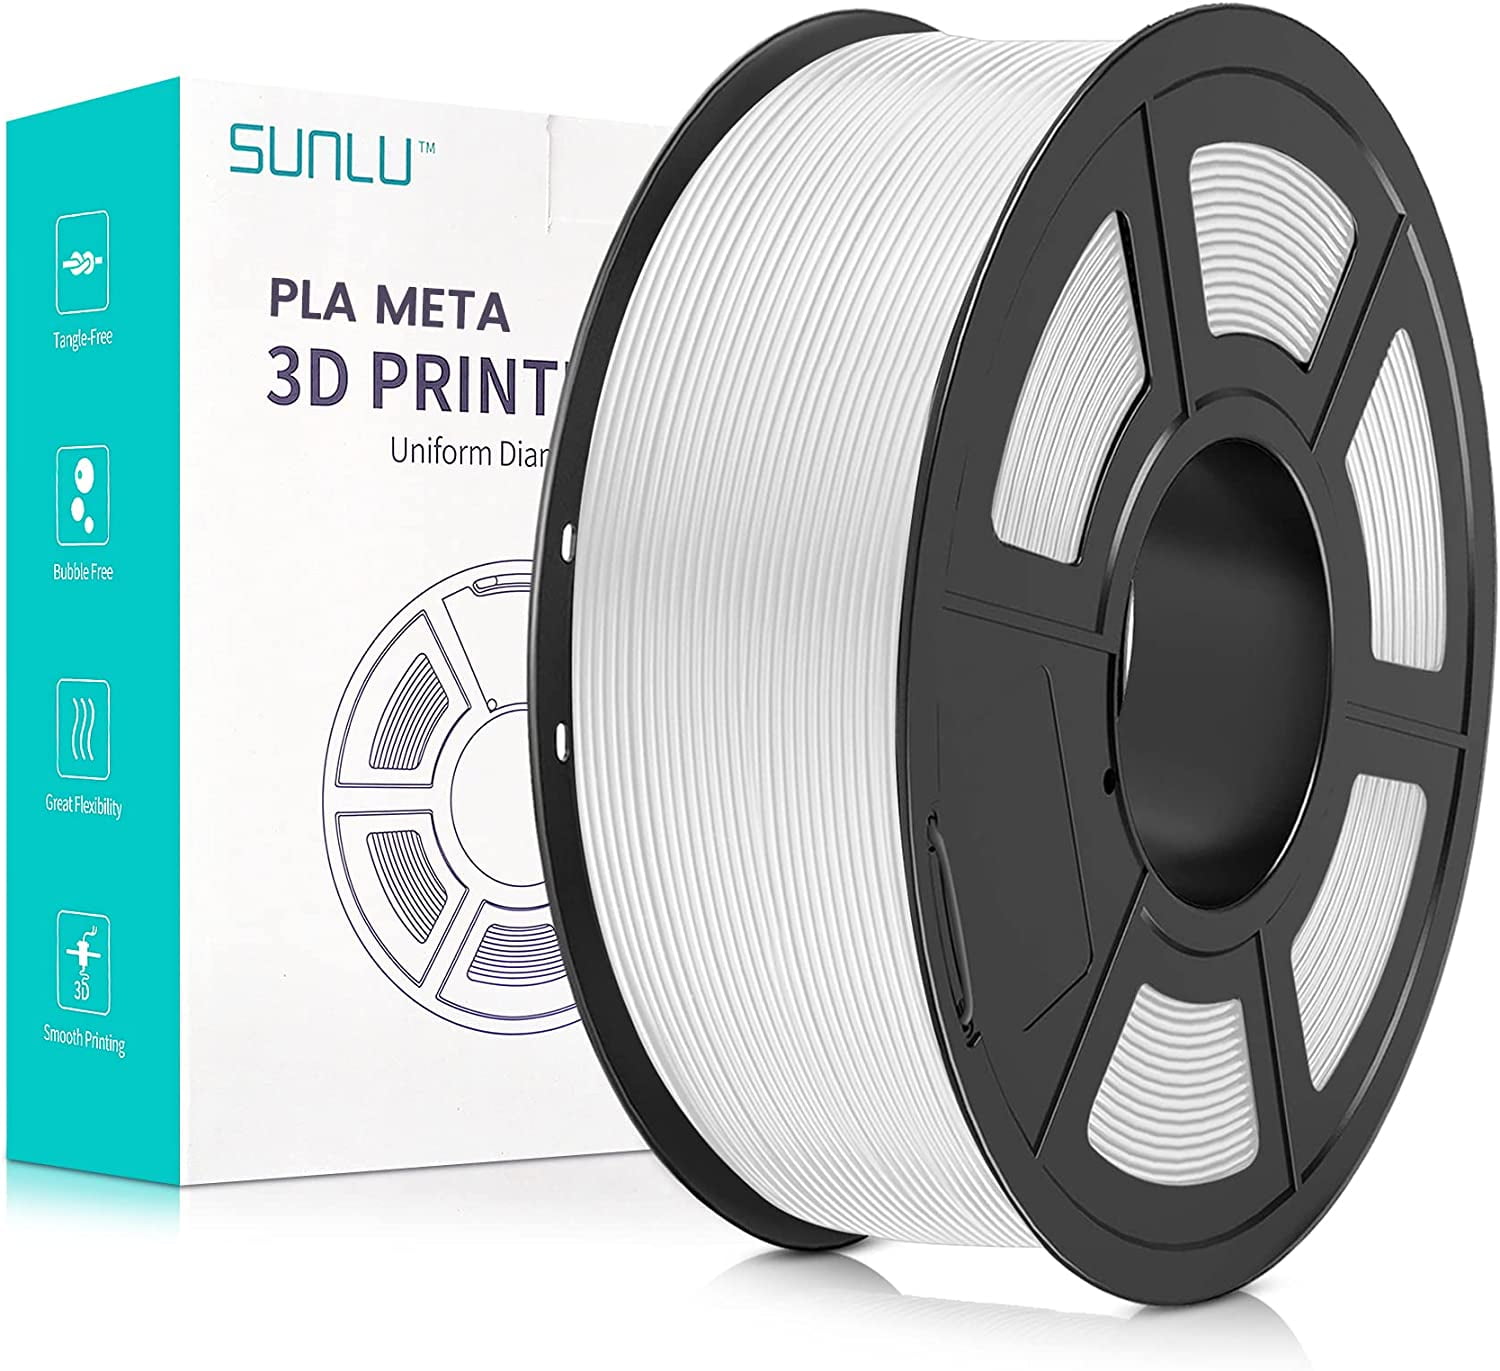 ELEGOO PLA 3D Printer Filament 1.75mm 4 Colors 10KG